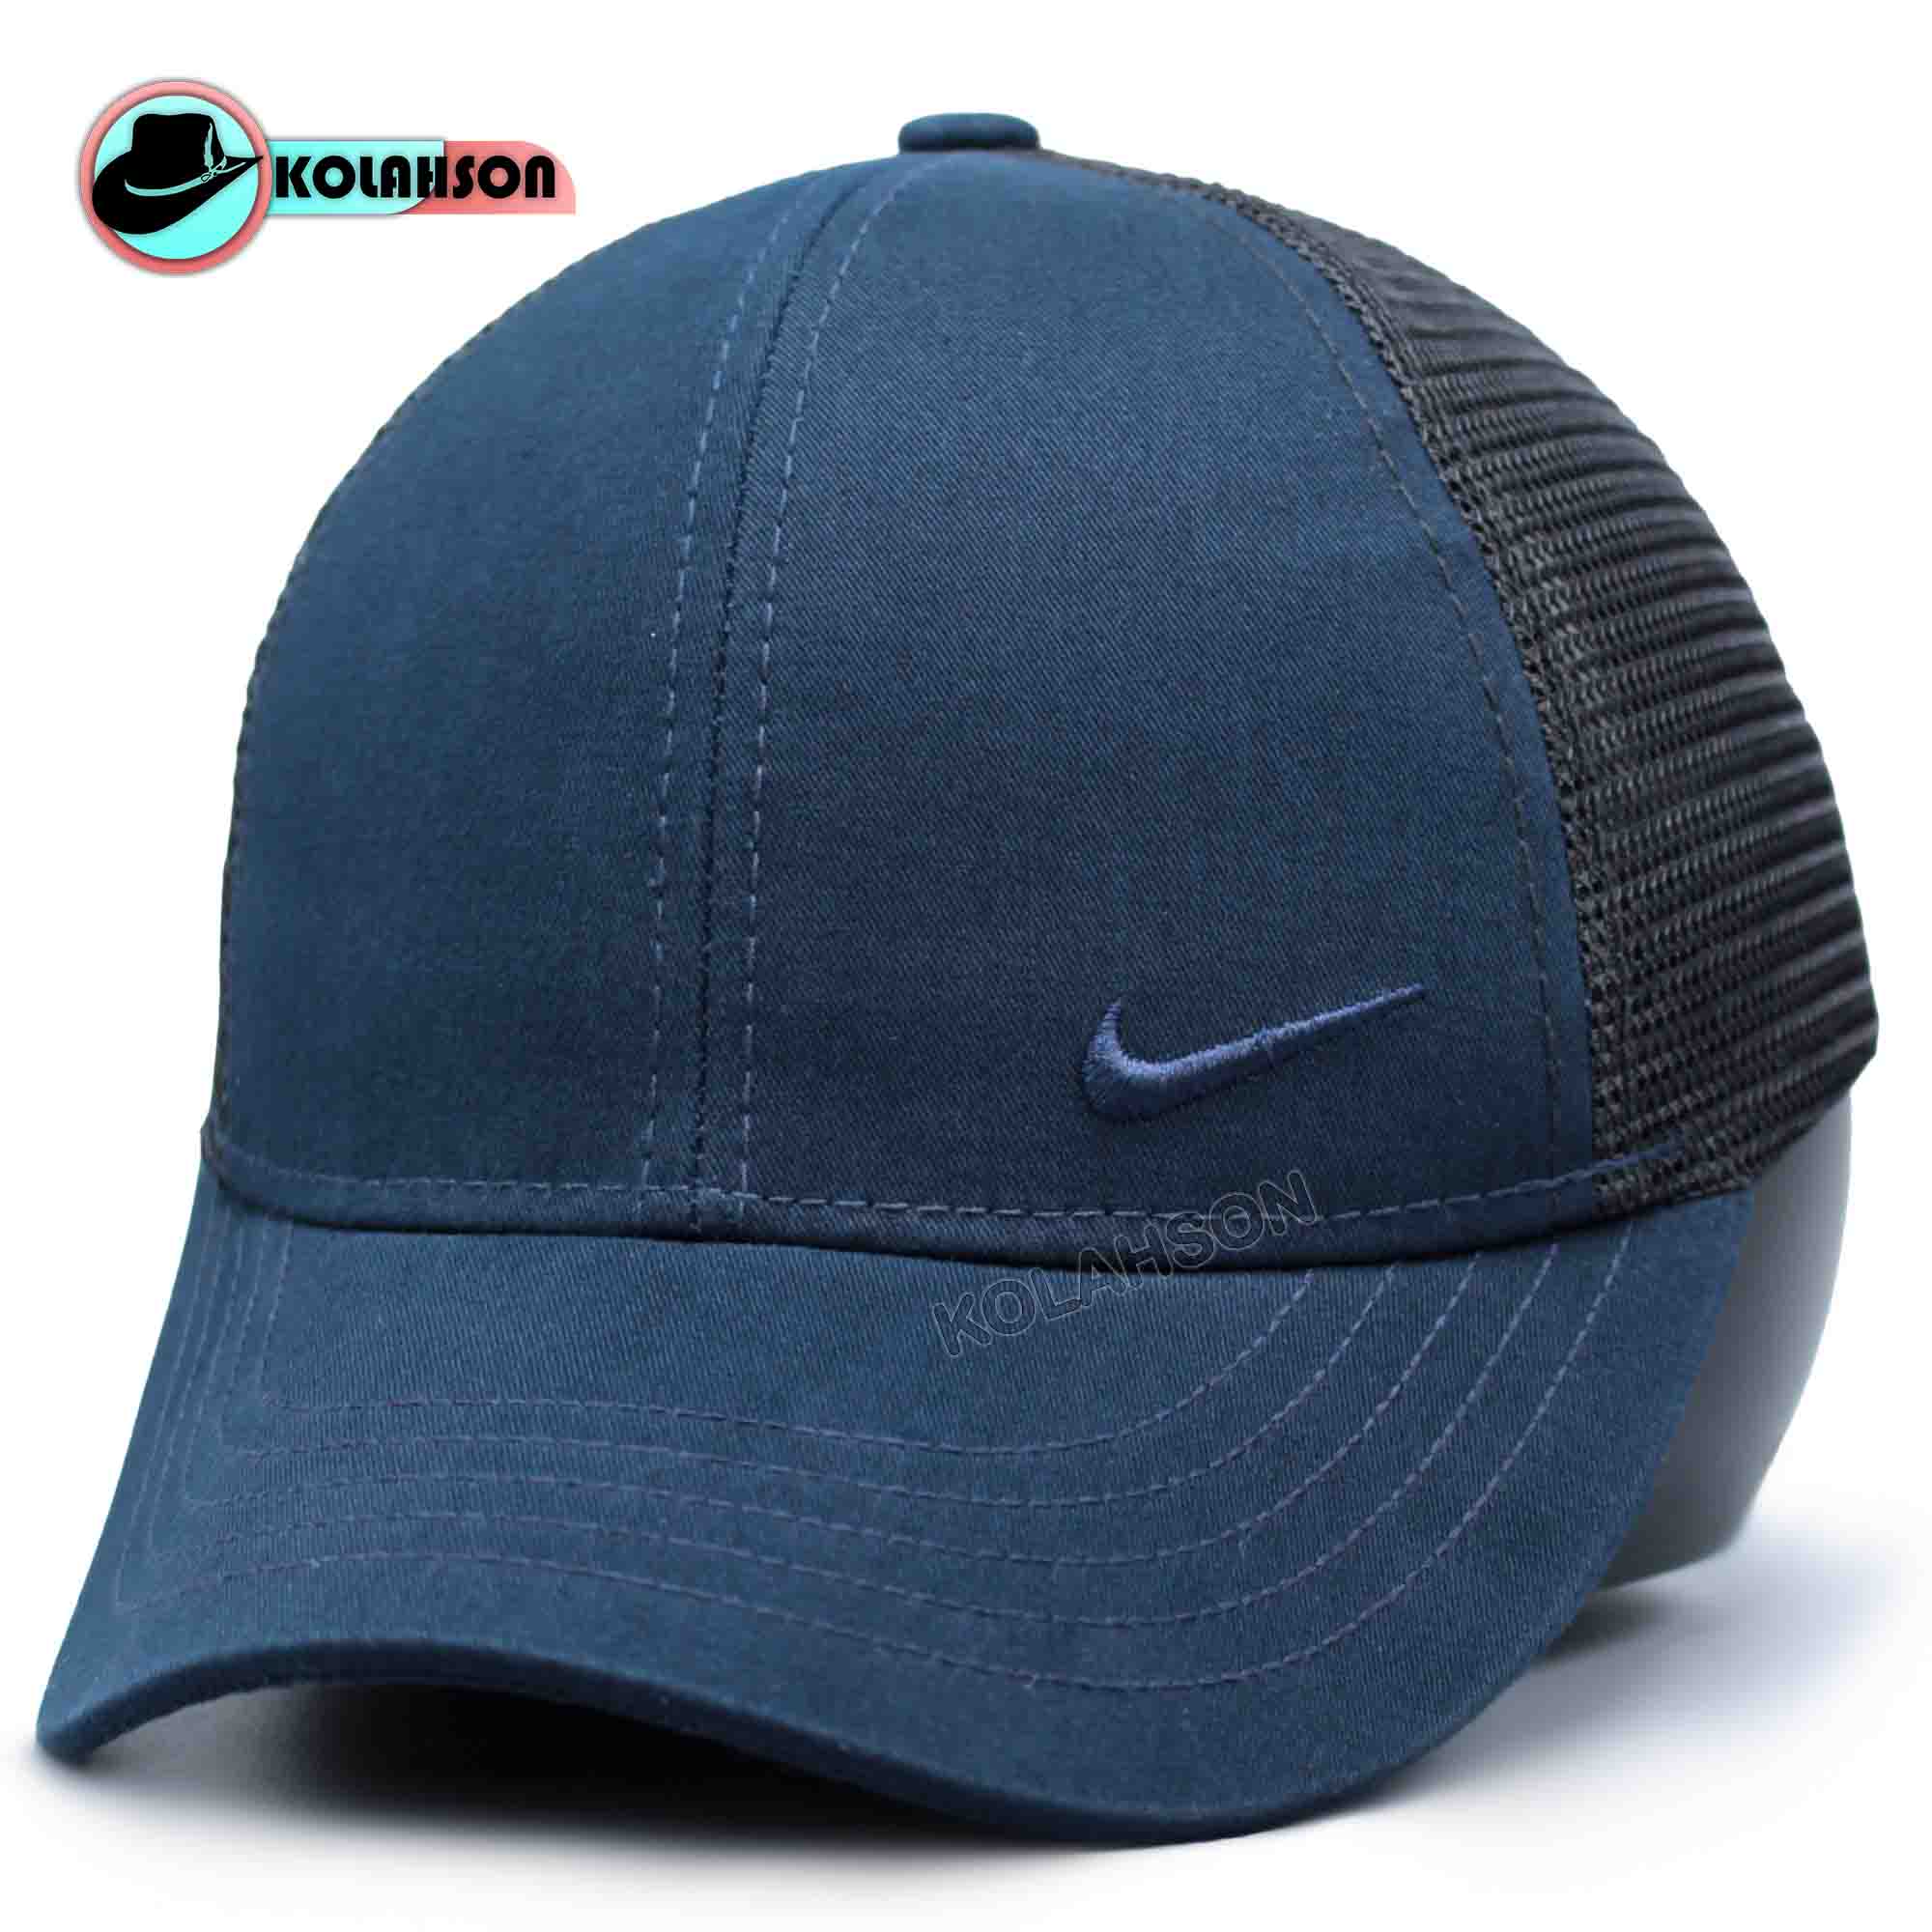 کلاه بزرگسالی اسپرت بیسبالی پشت توری طرح کوچک کنار طرح Nike با رنگ های سدری مشکی سرمه ای و طوسی کد KBEBPTKKTNBRHSMSVT001